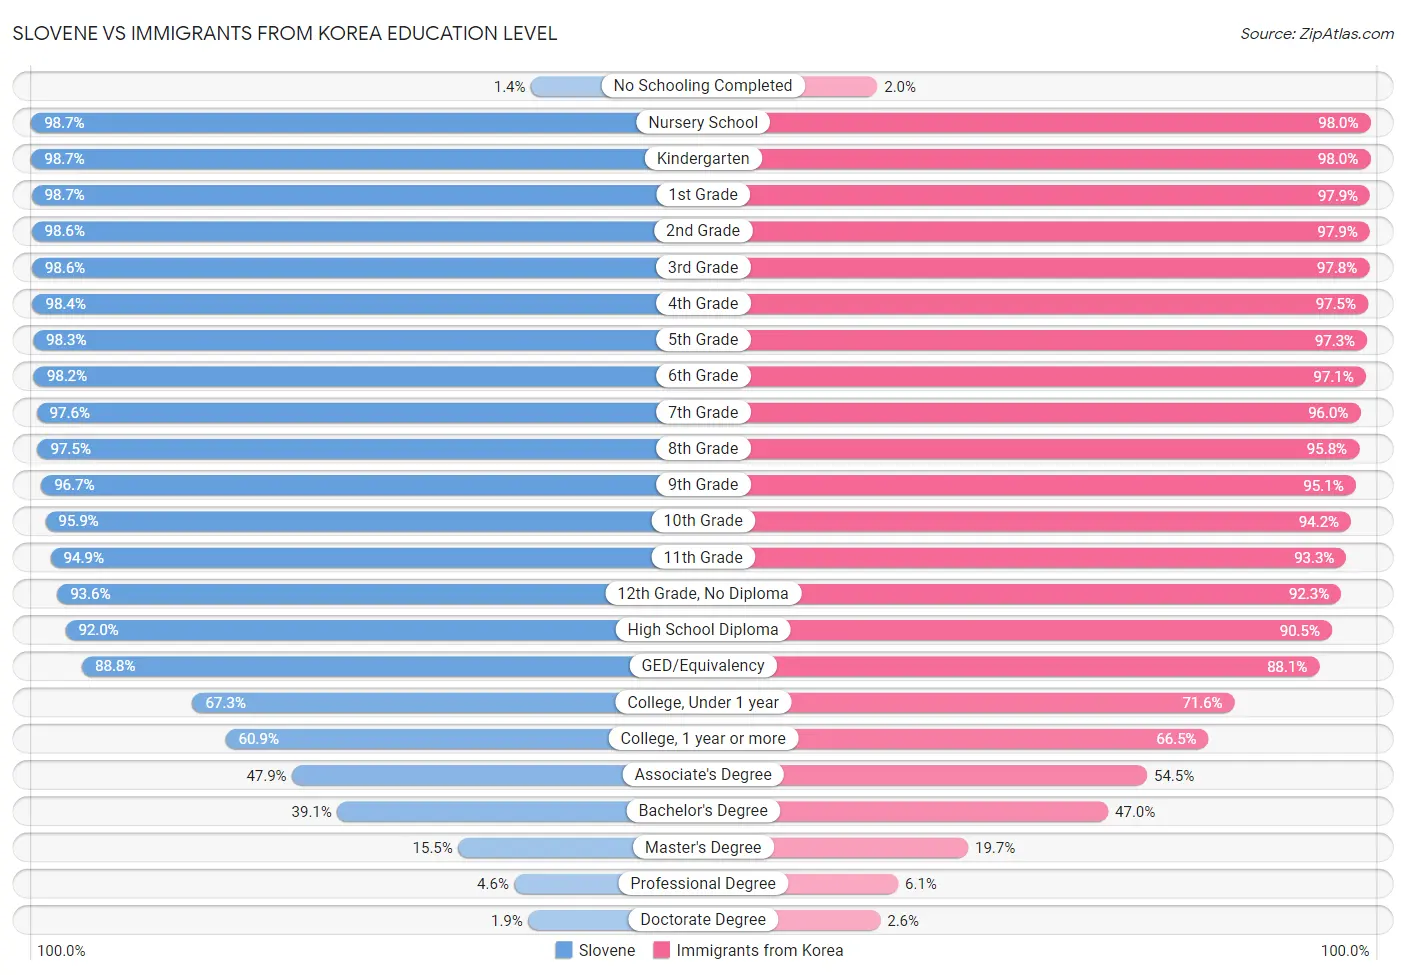 Slovene vs Immigrants from Korea Education Level